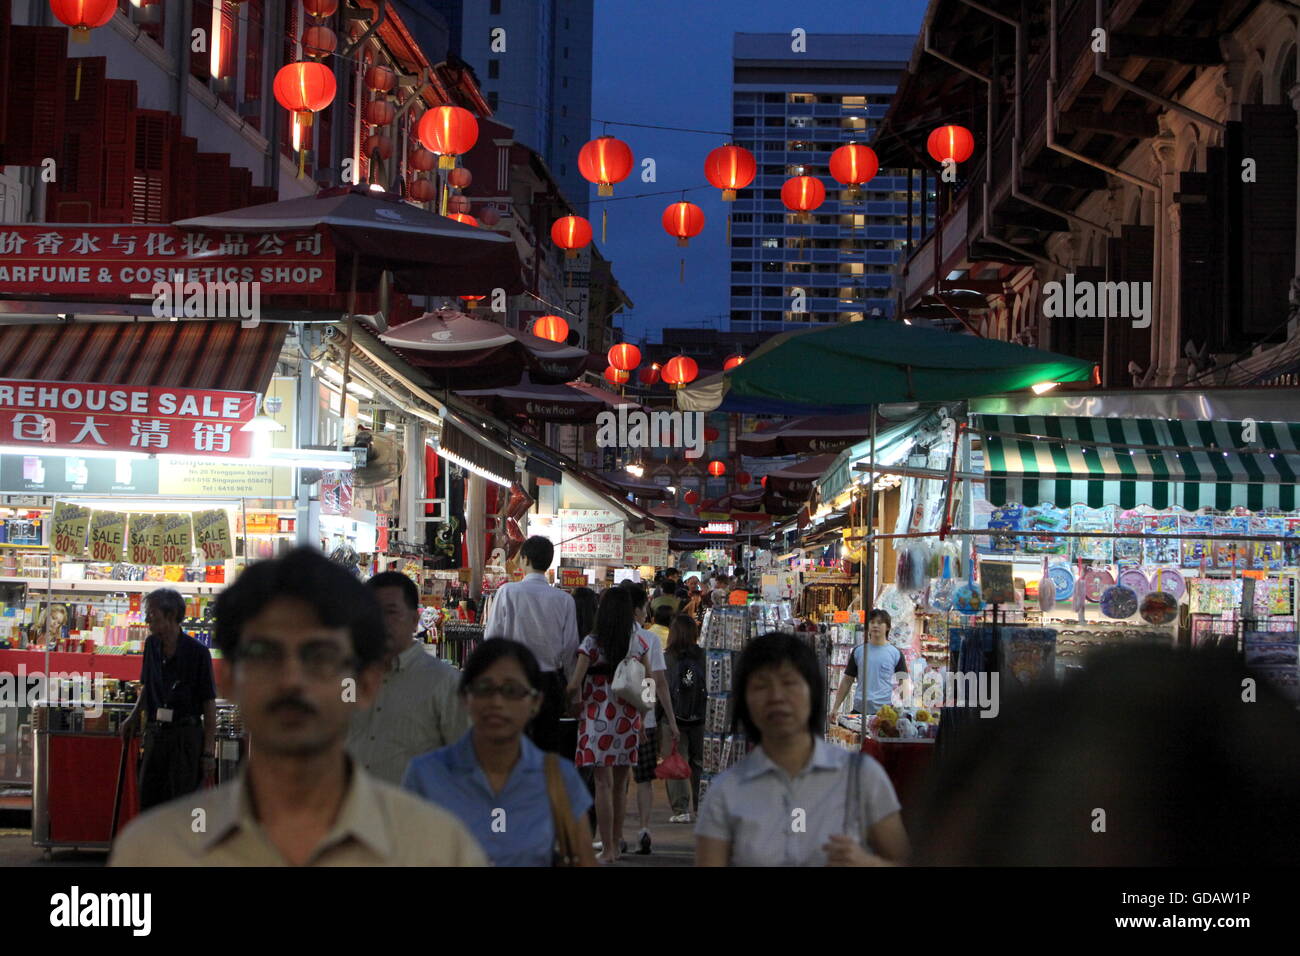 Asiatische Laternen in einem Laden im Chinatown und Altstadt von Singapur im Inselstaat Singapur in Asien. Stock Photo